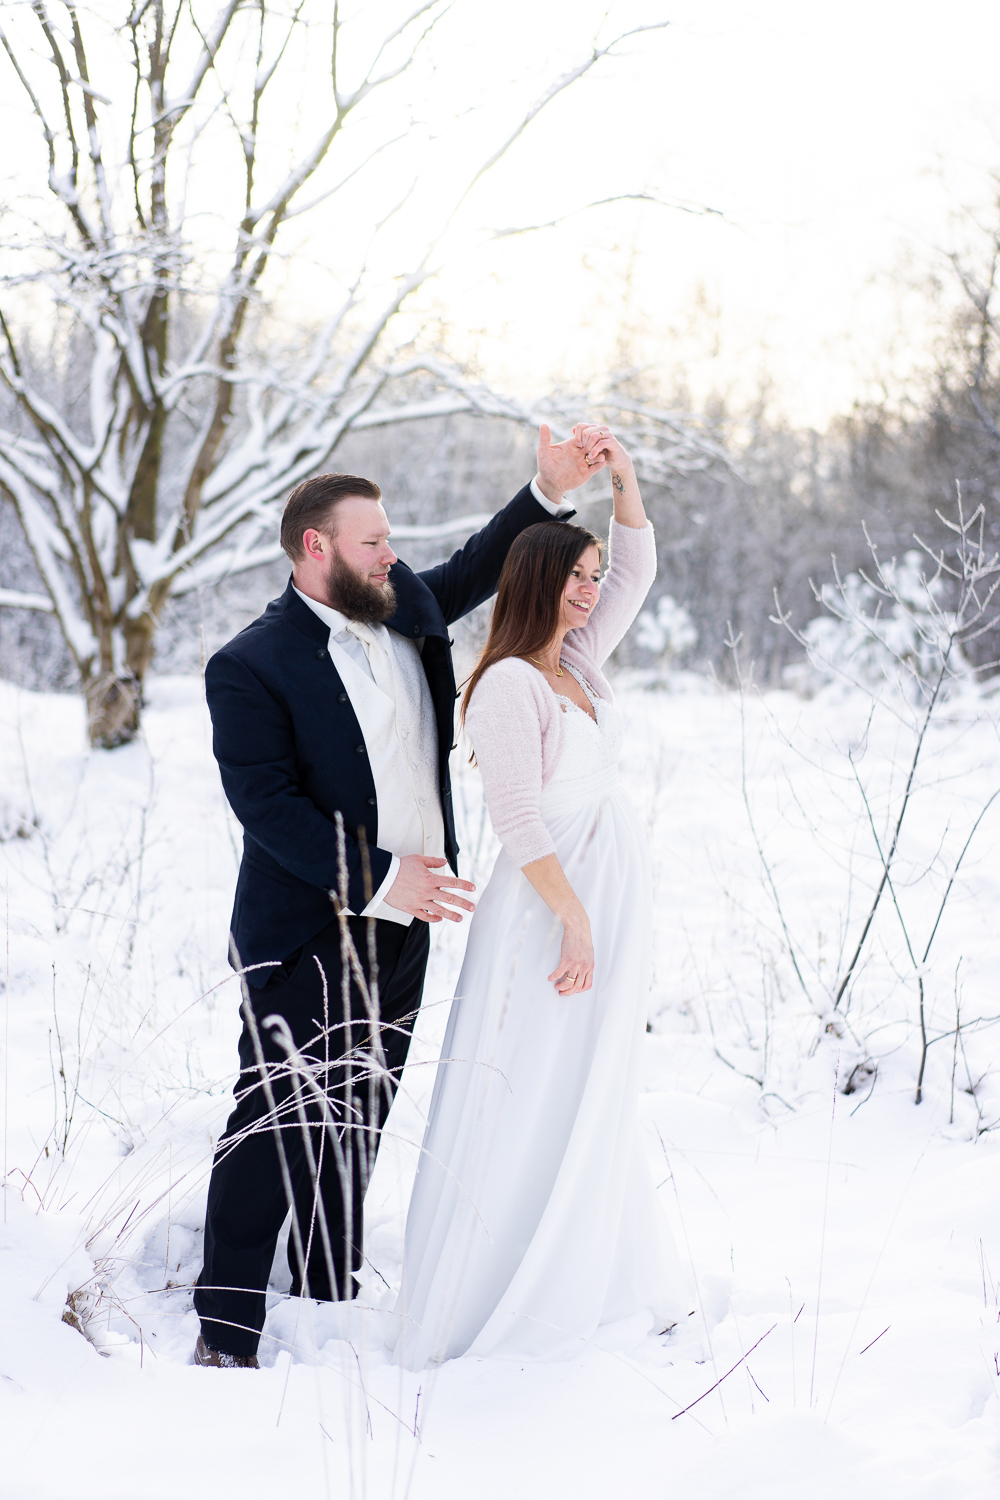 Brautpaar tanzt im Schnee Hochzeitsfotografin Bremen Winterhochzeit